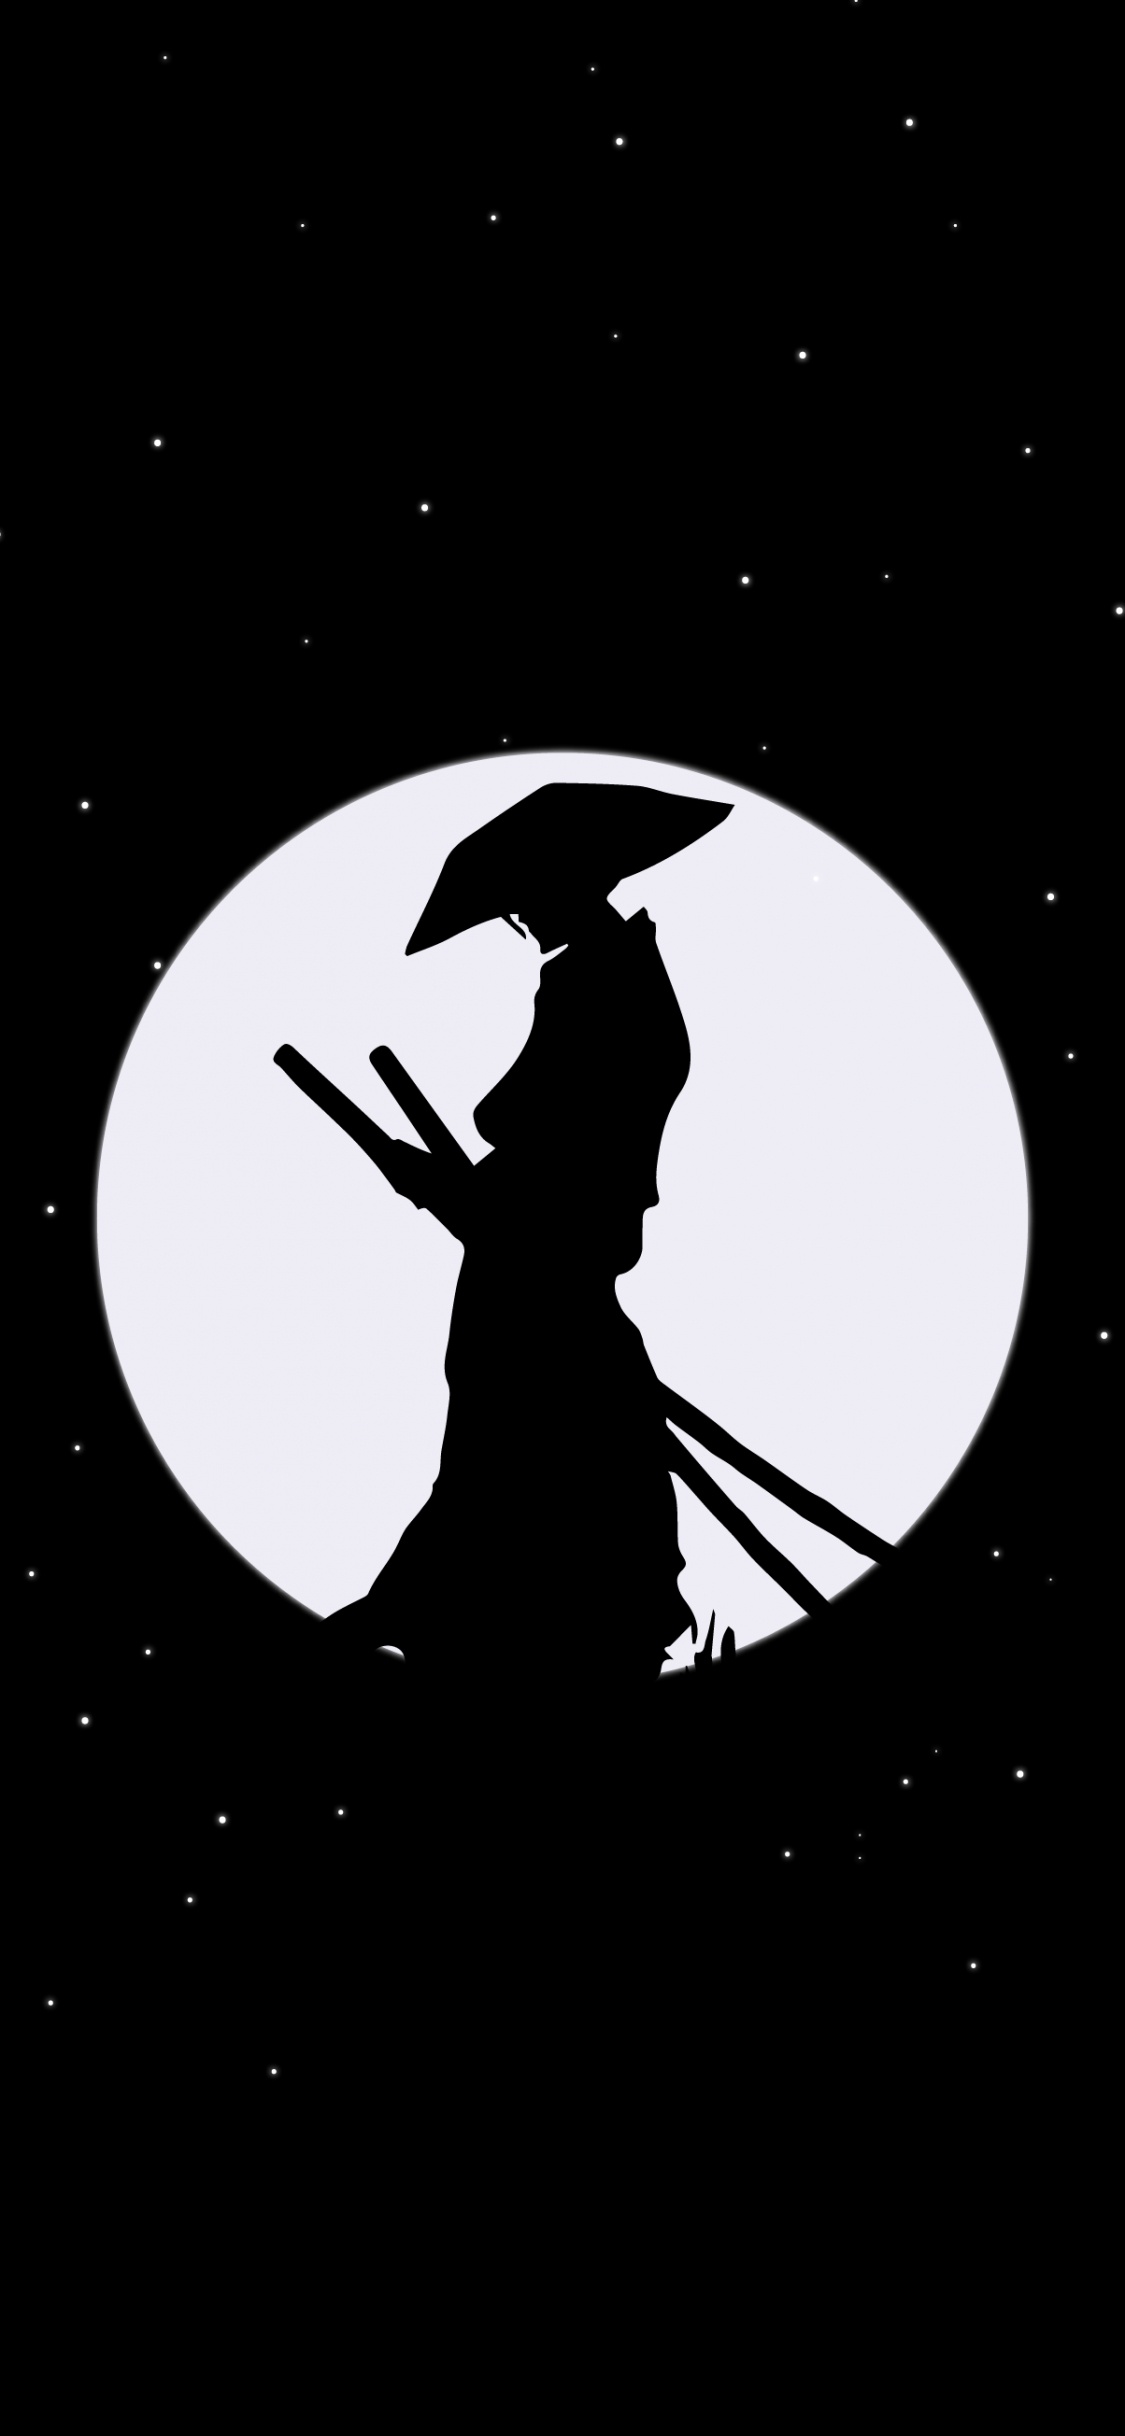 Samurai, Mond, Amoled, Raum, Astronomisches Objekt. Wallpaper in 1125x2436 Resolution